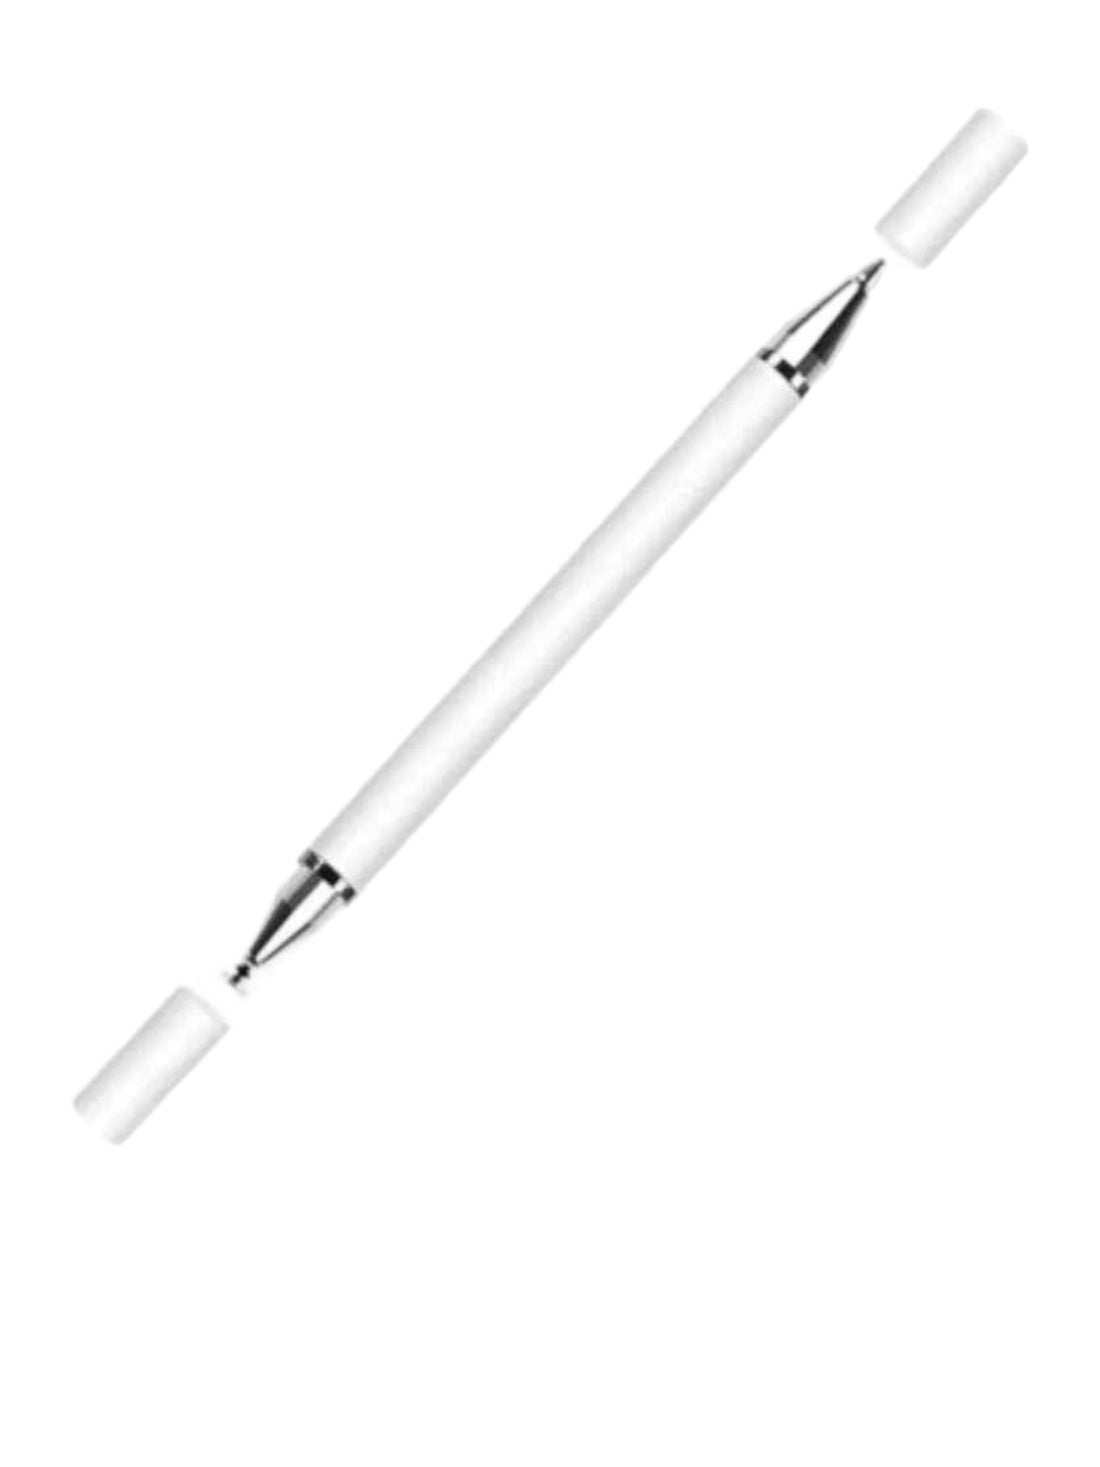 2 in 1 - Ballpoint Pen & Stylus